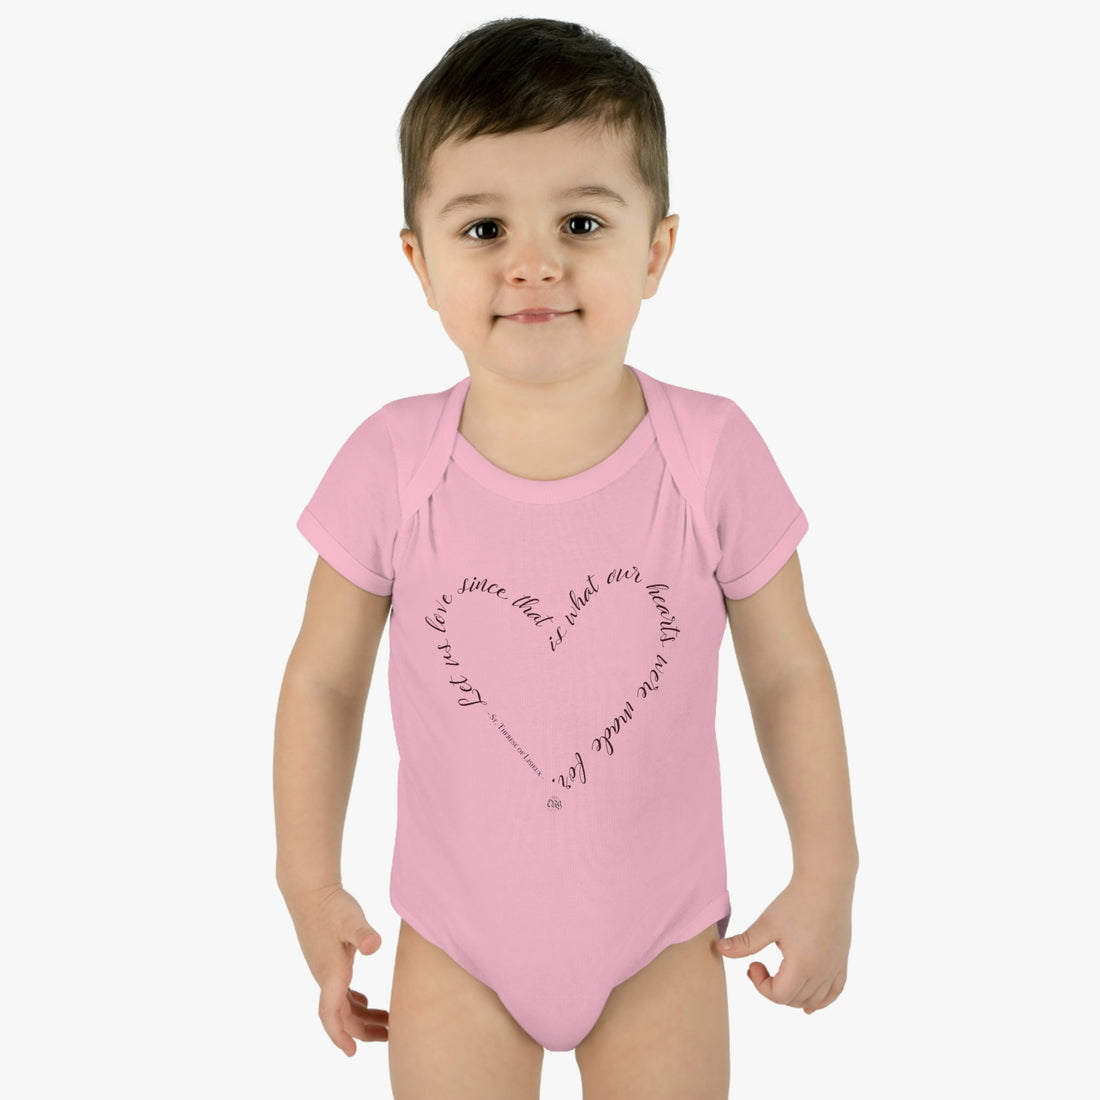 "Let us Love" Baby Onesie - Adoption Benefit Design